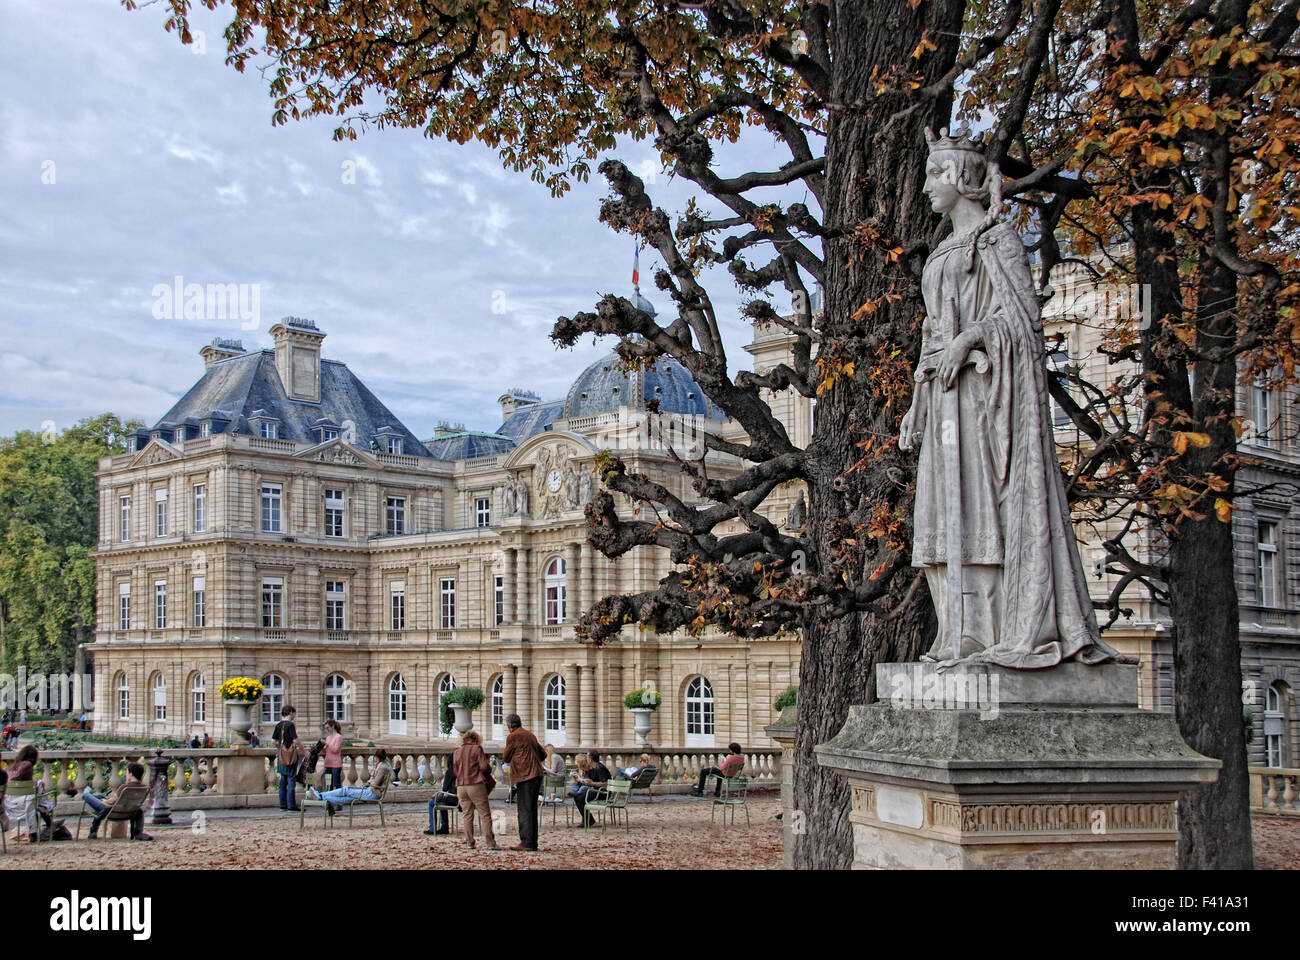 palais parisienne Stock Photo